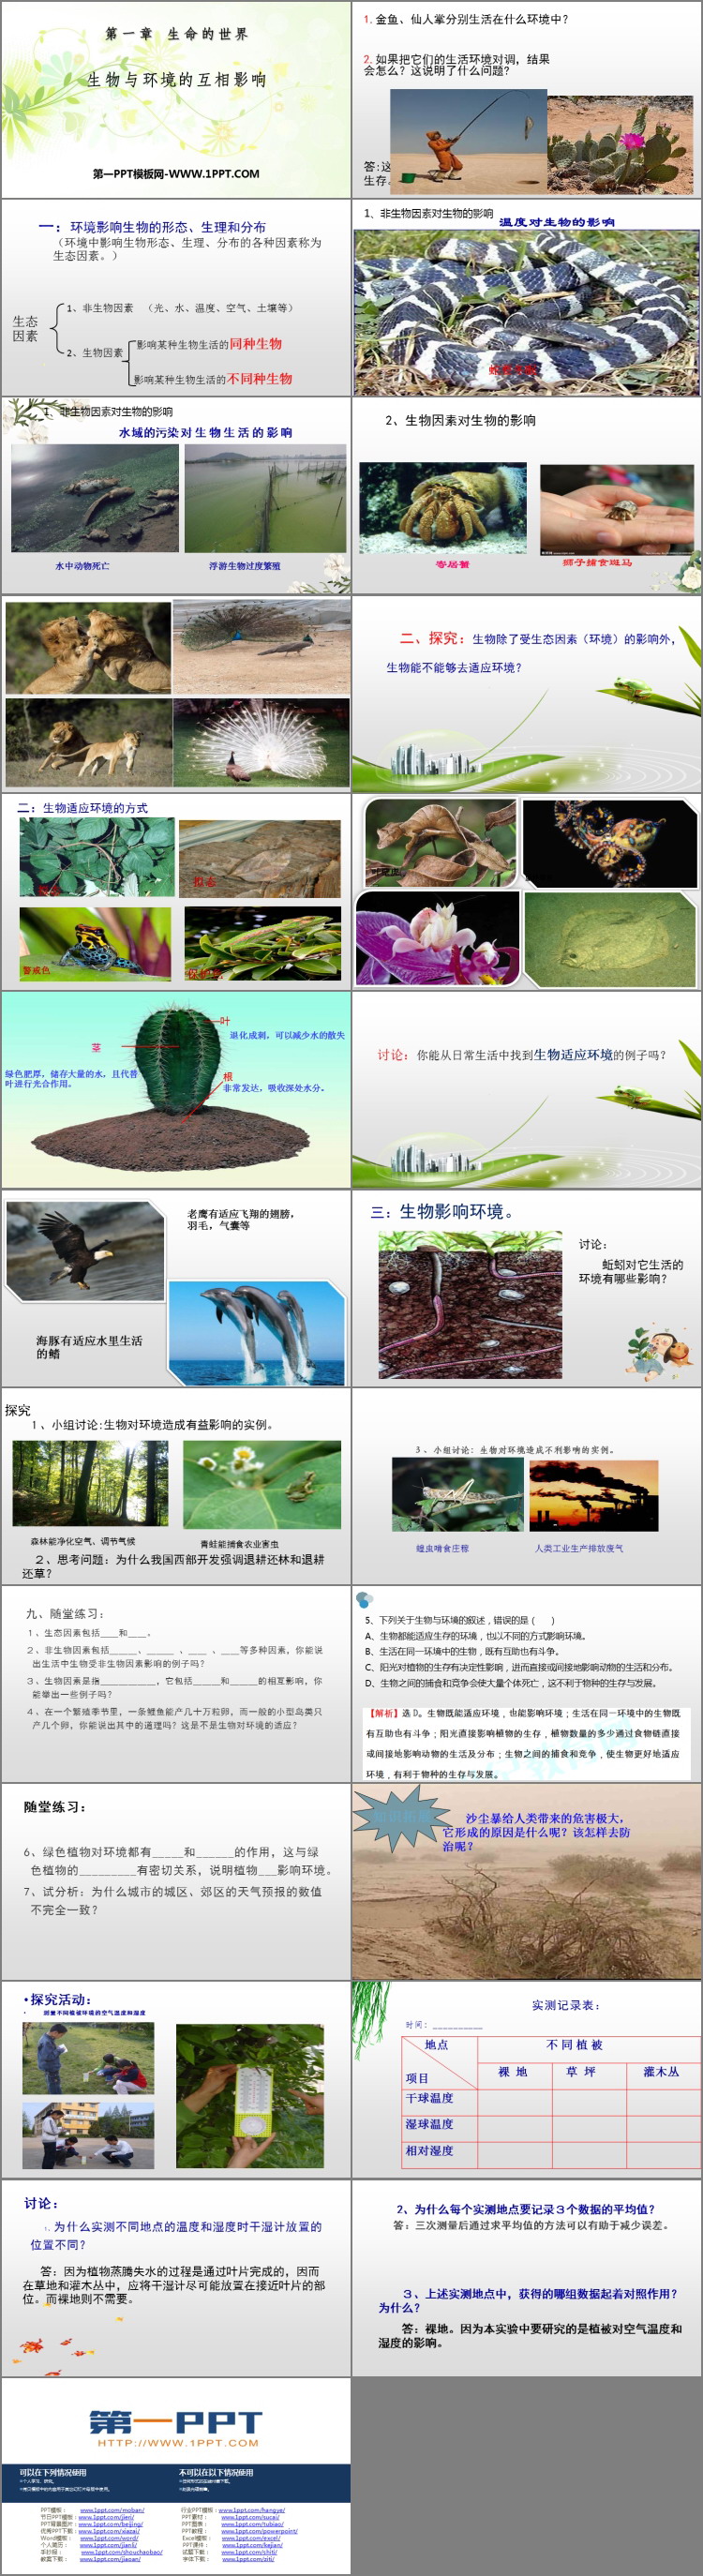 《生物与环境的相互影响》PPT优质课件-预览图02